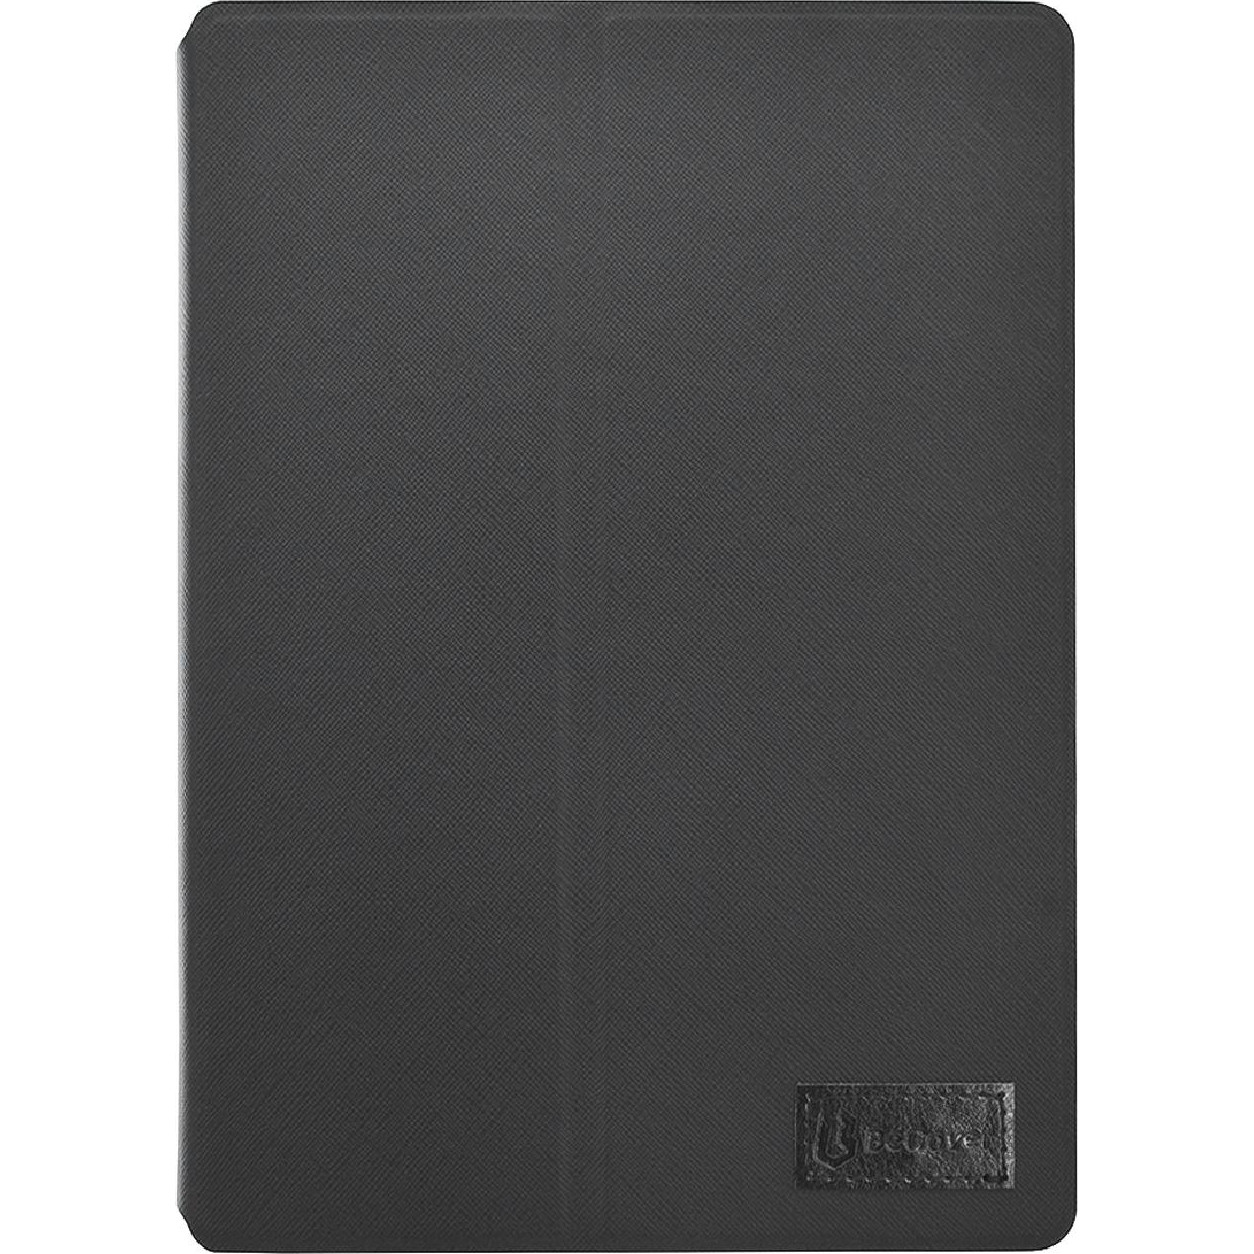 BeCover Premium для Samsung Galaxy Tab S6 10.5 T865 Black (704173) - зображення 1